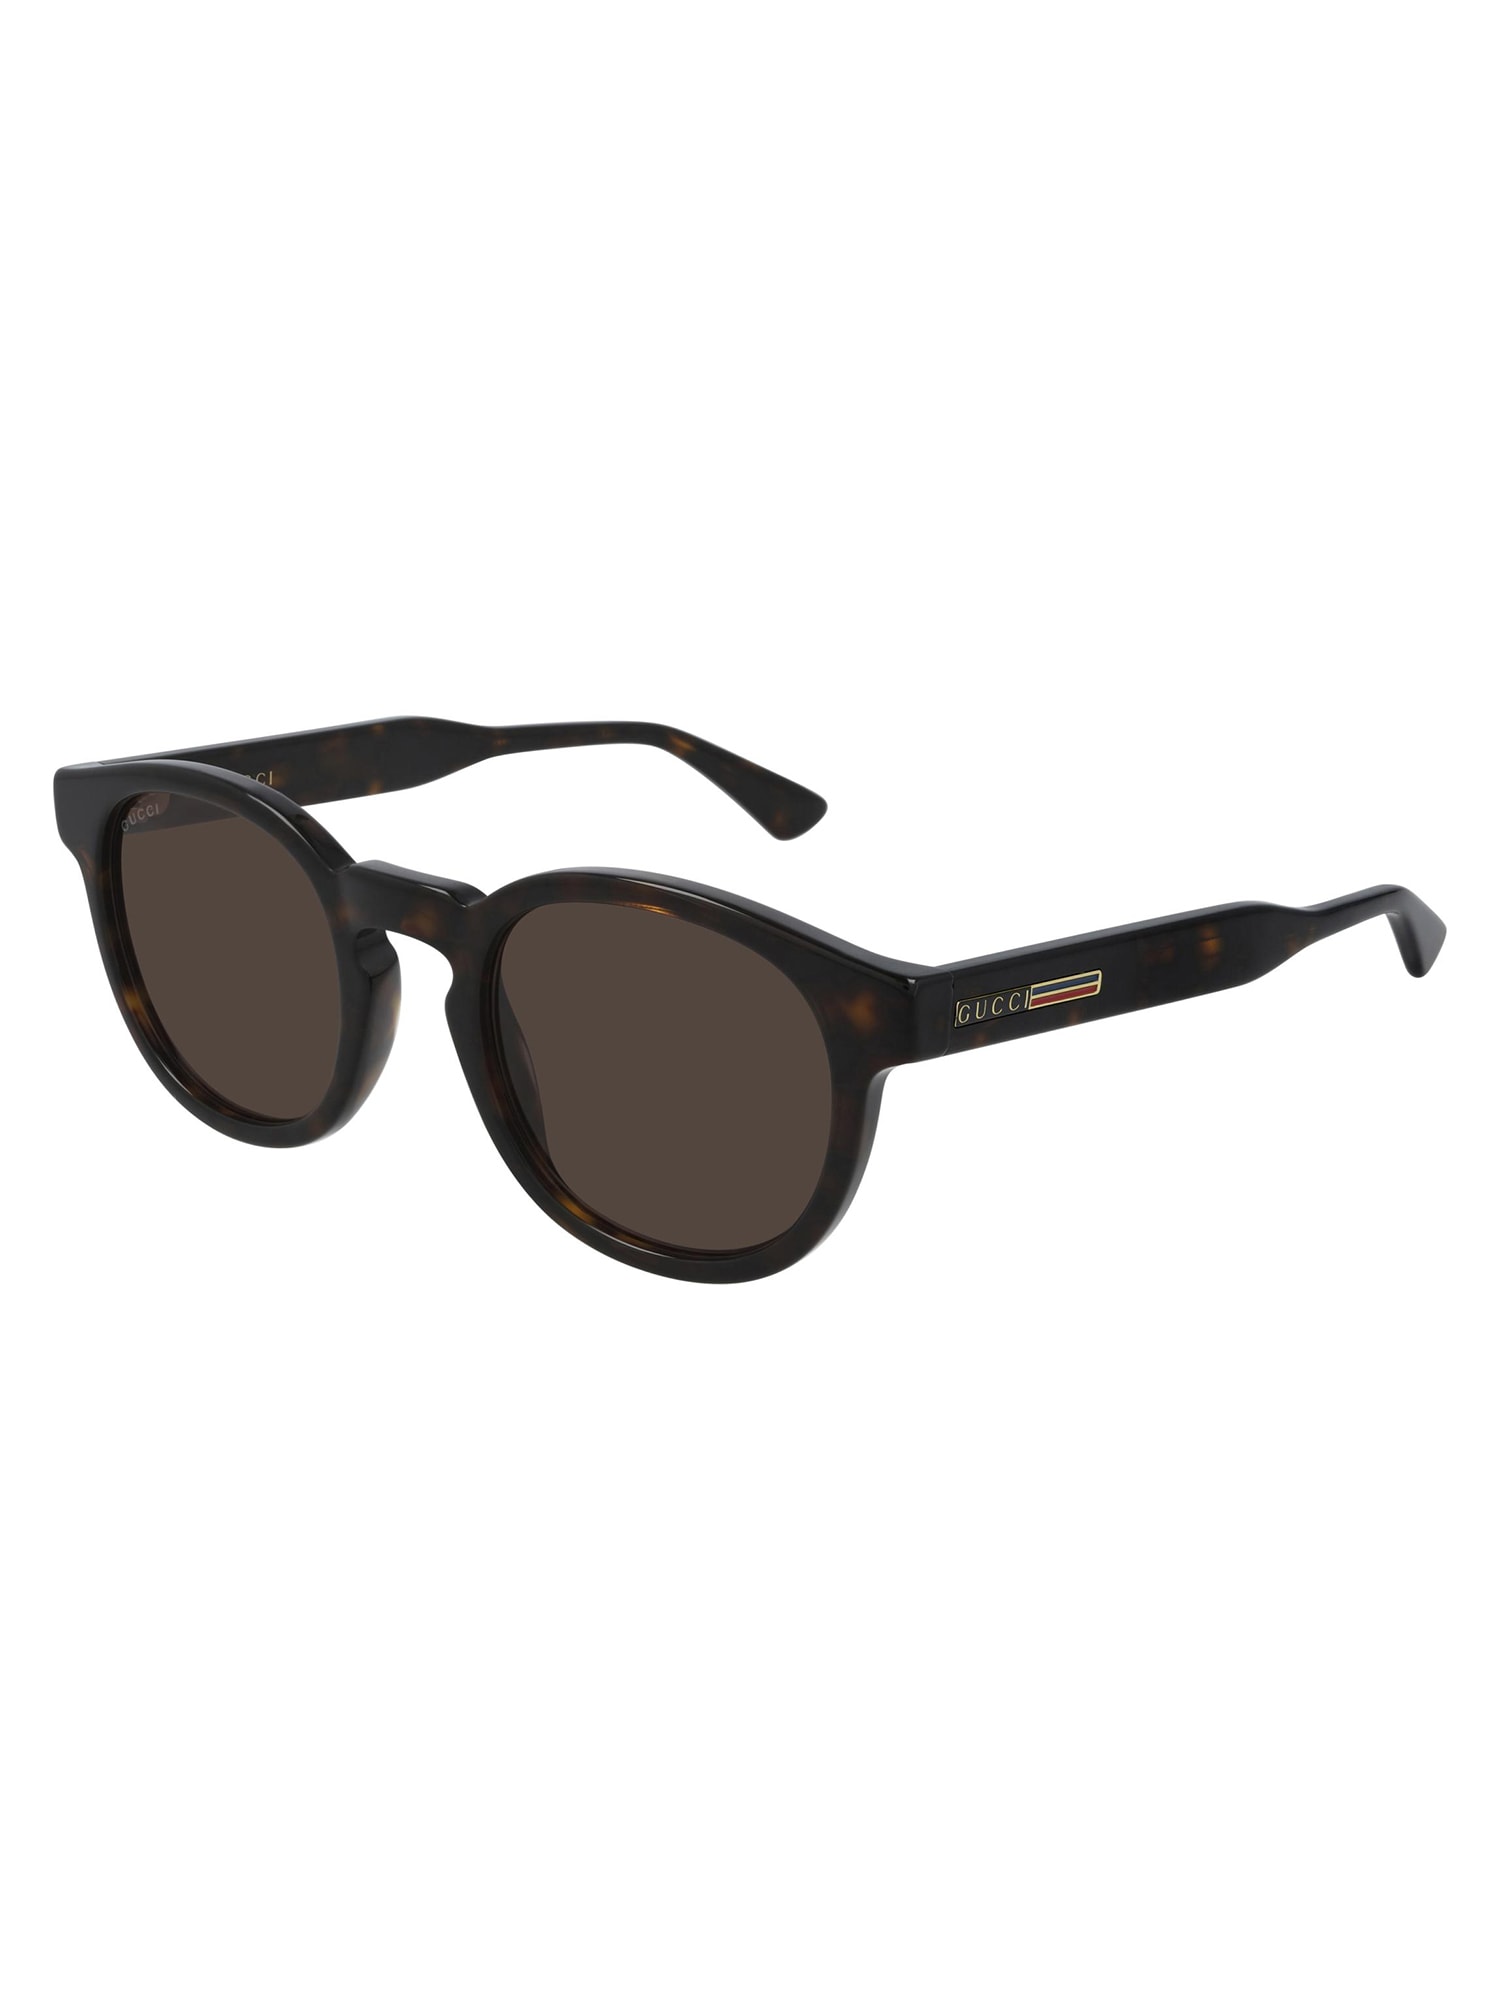 Gucci GG0825S Sunglasses